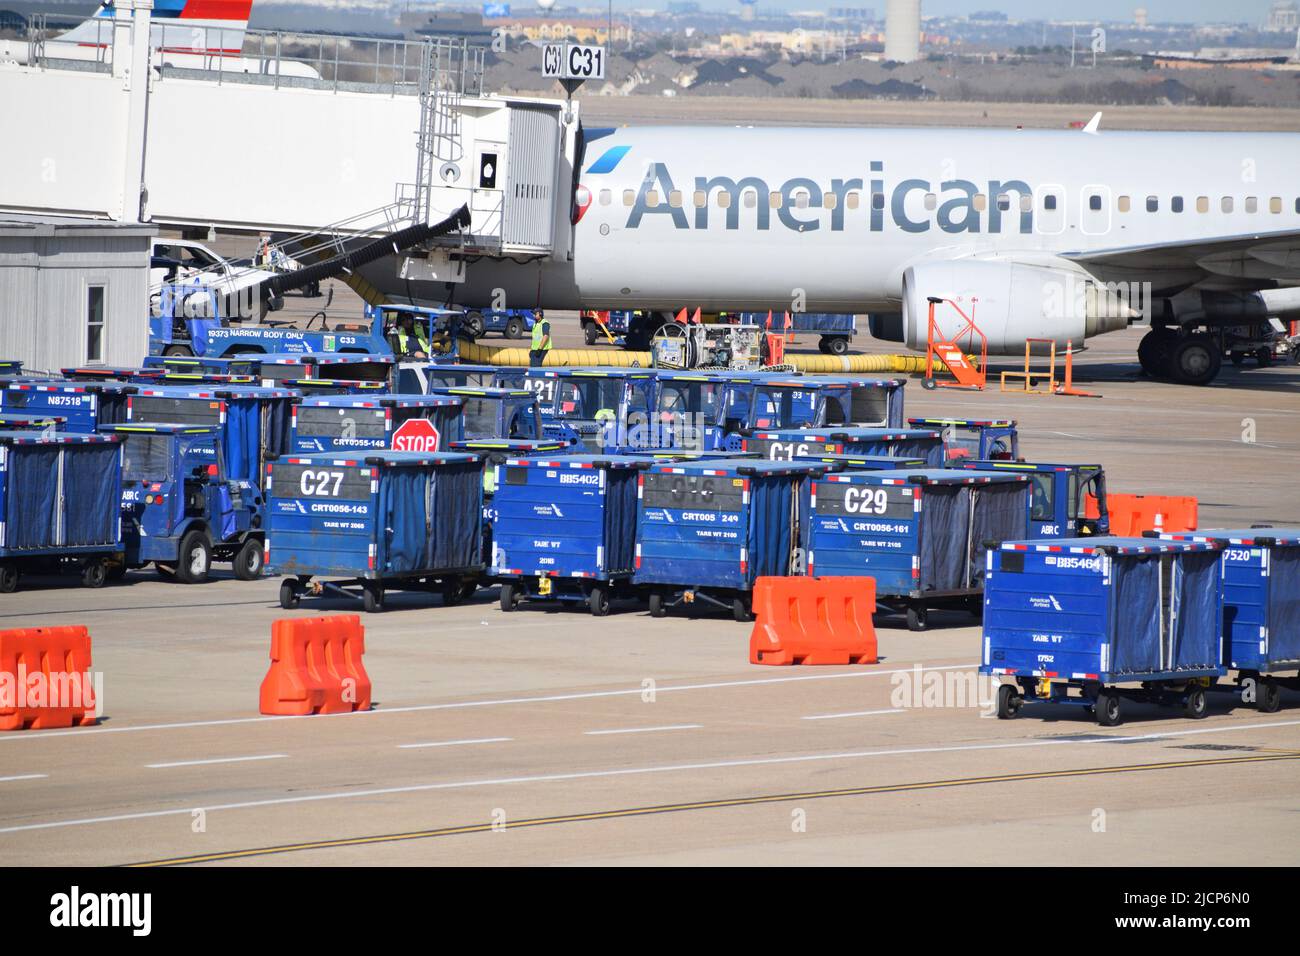 Ein Flugzeug von American Airlines, das von Mitarbeitern der Rampe bedient wird, während es am Gate C31 am Terminal C des DFW Airport (Dallas-Fort Worth Airport) geparkt ist Stockfoto